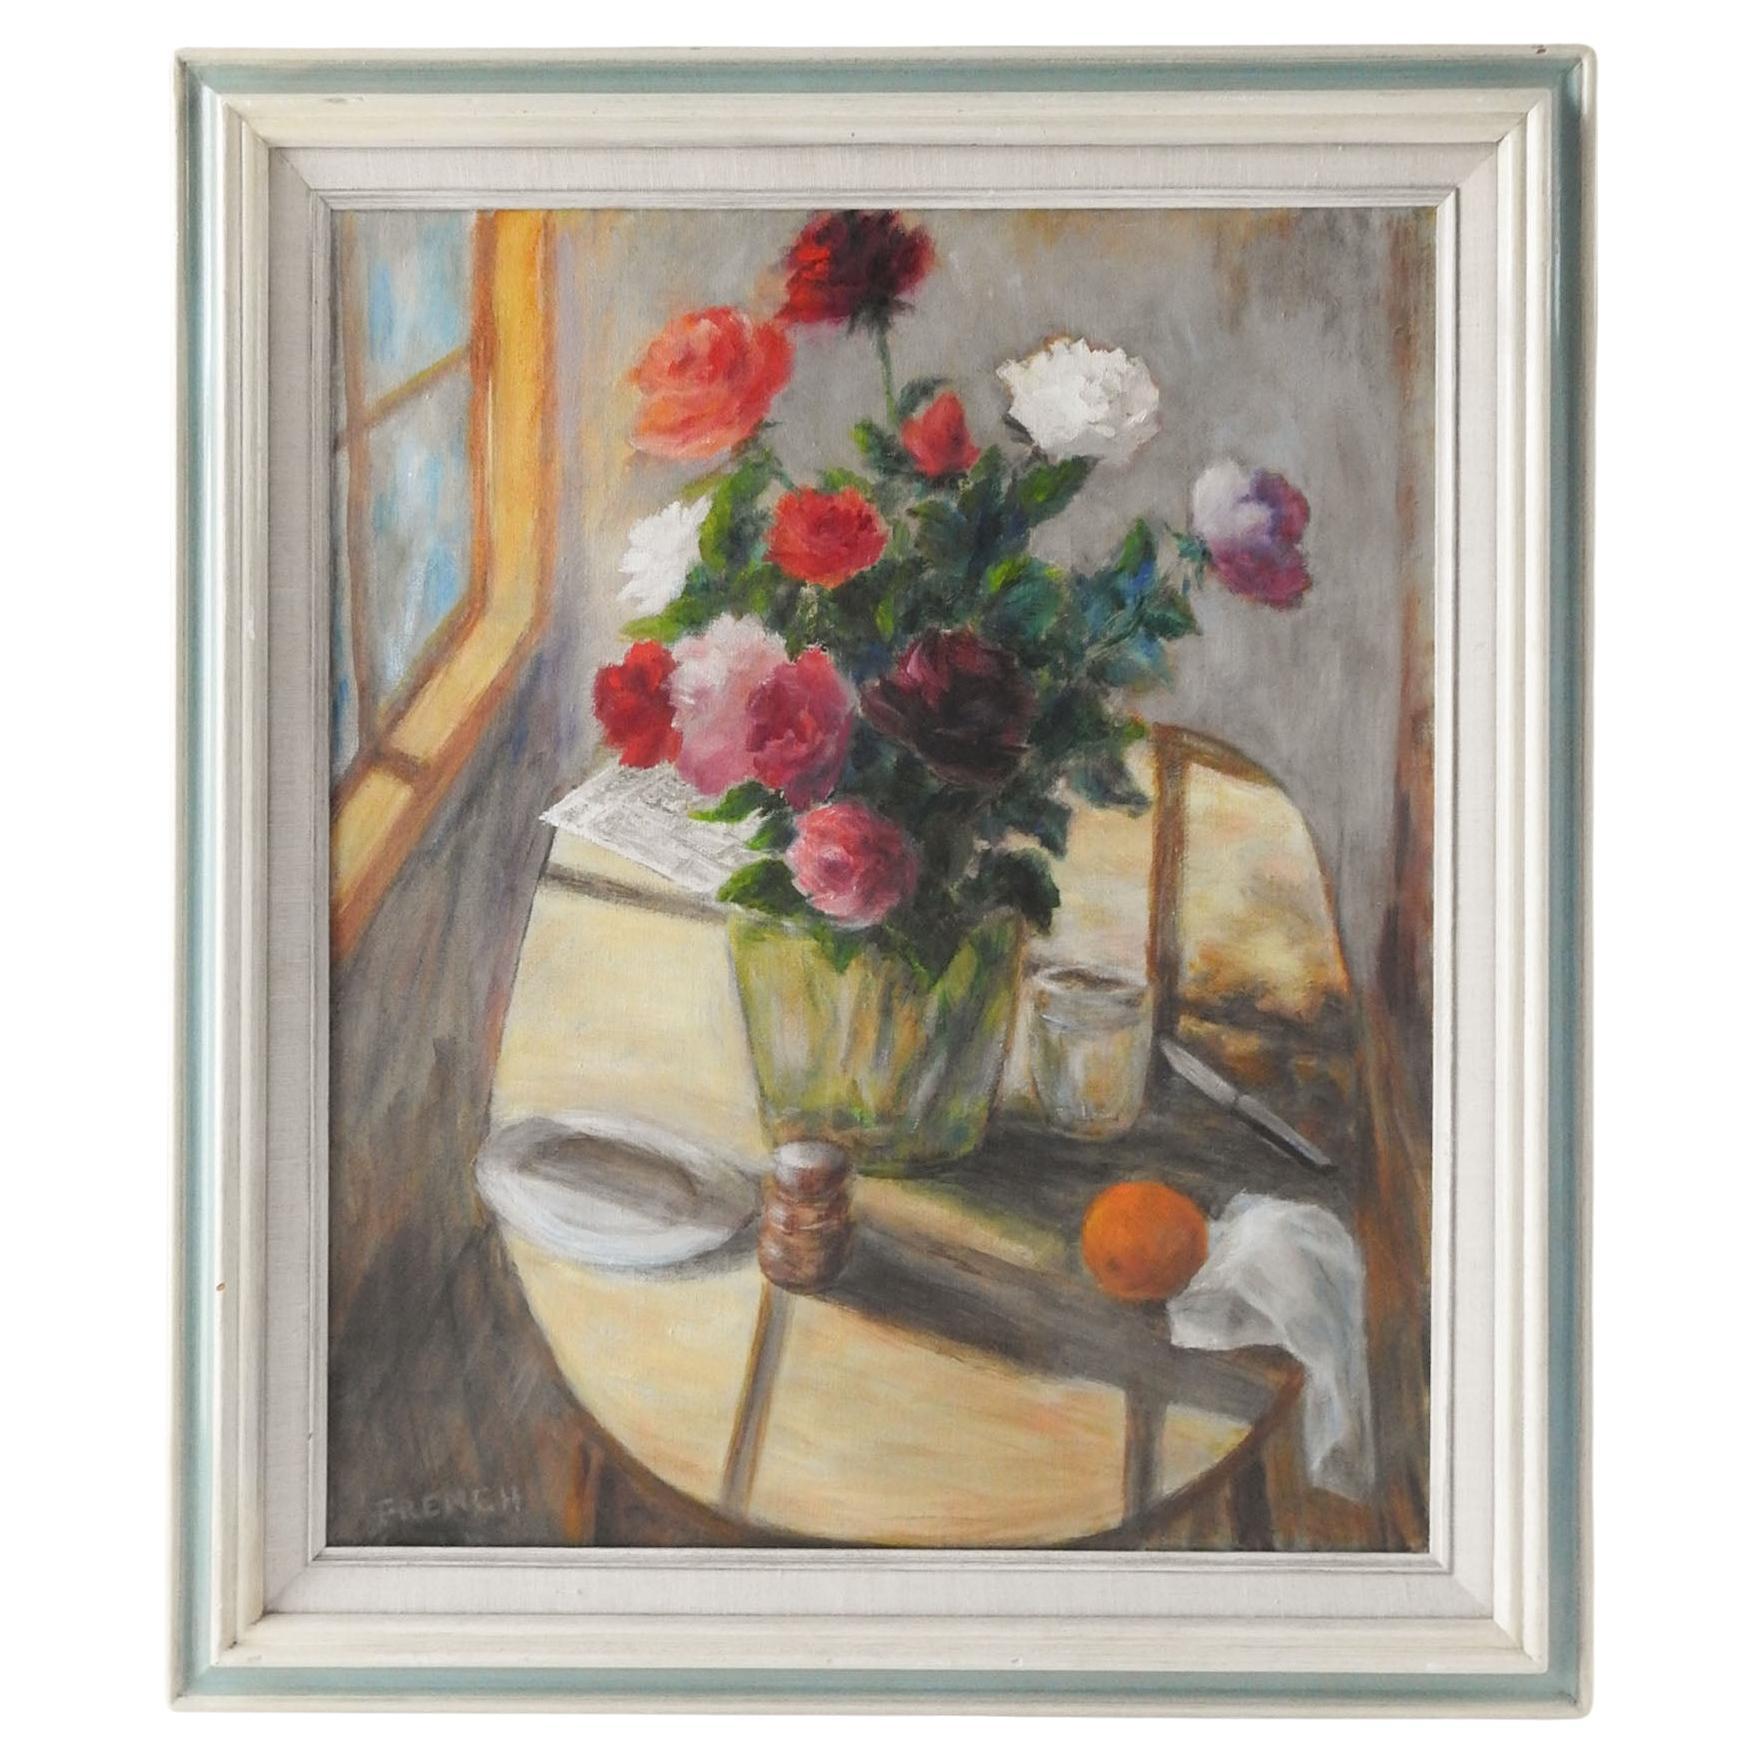 Impressionistisches Stillleben mit Rosen in Fenstergemälde, Vintage